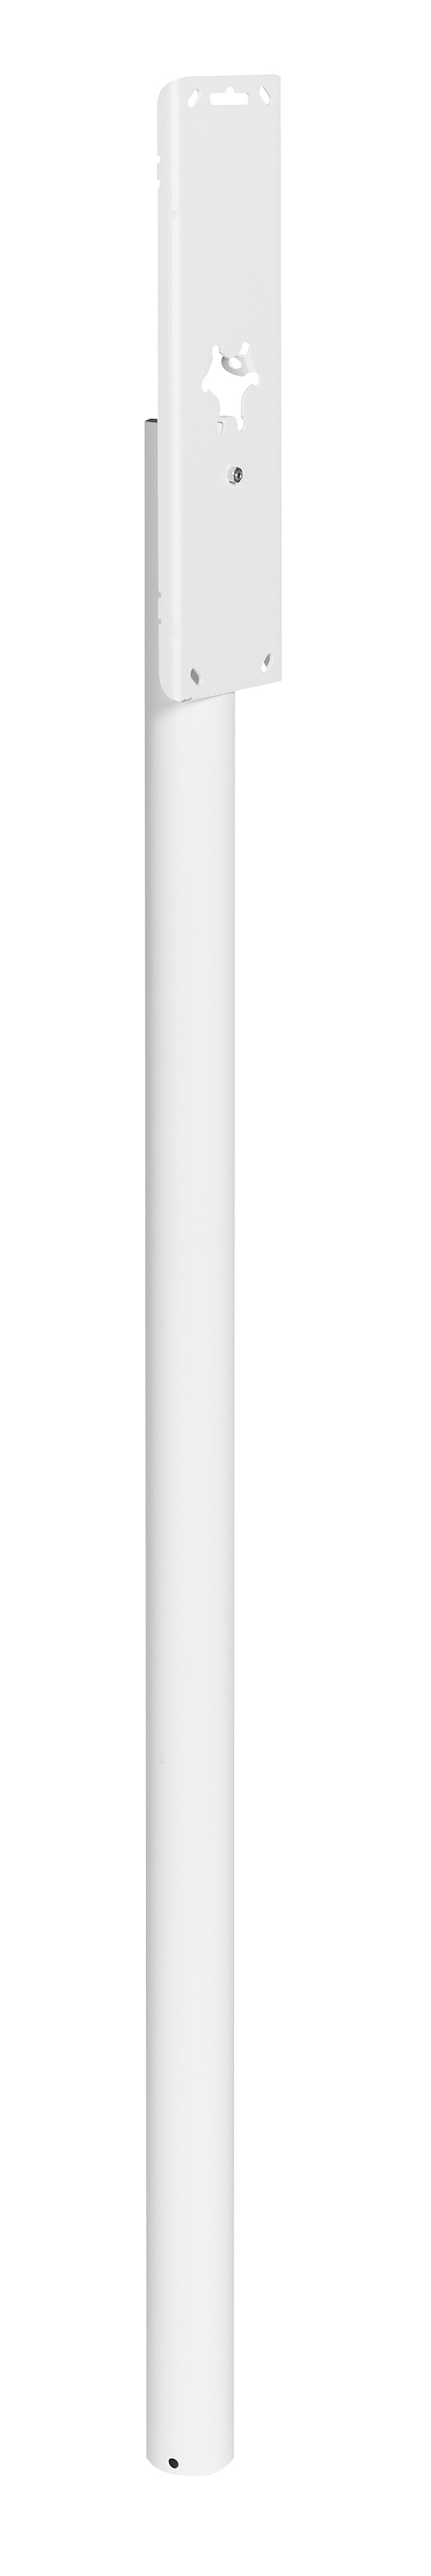 Piquet de boîte aux lettres cylindrique blanc 110 x 45mm - DECAYEUX